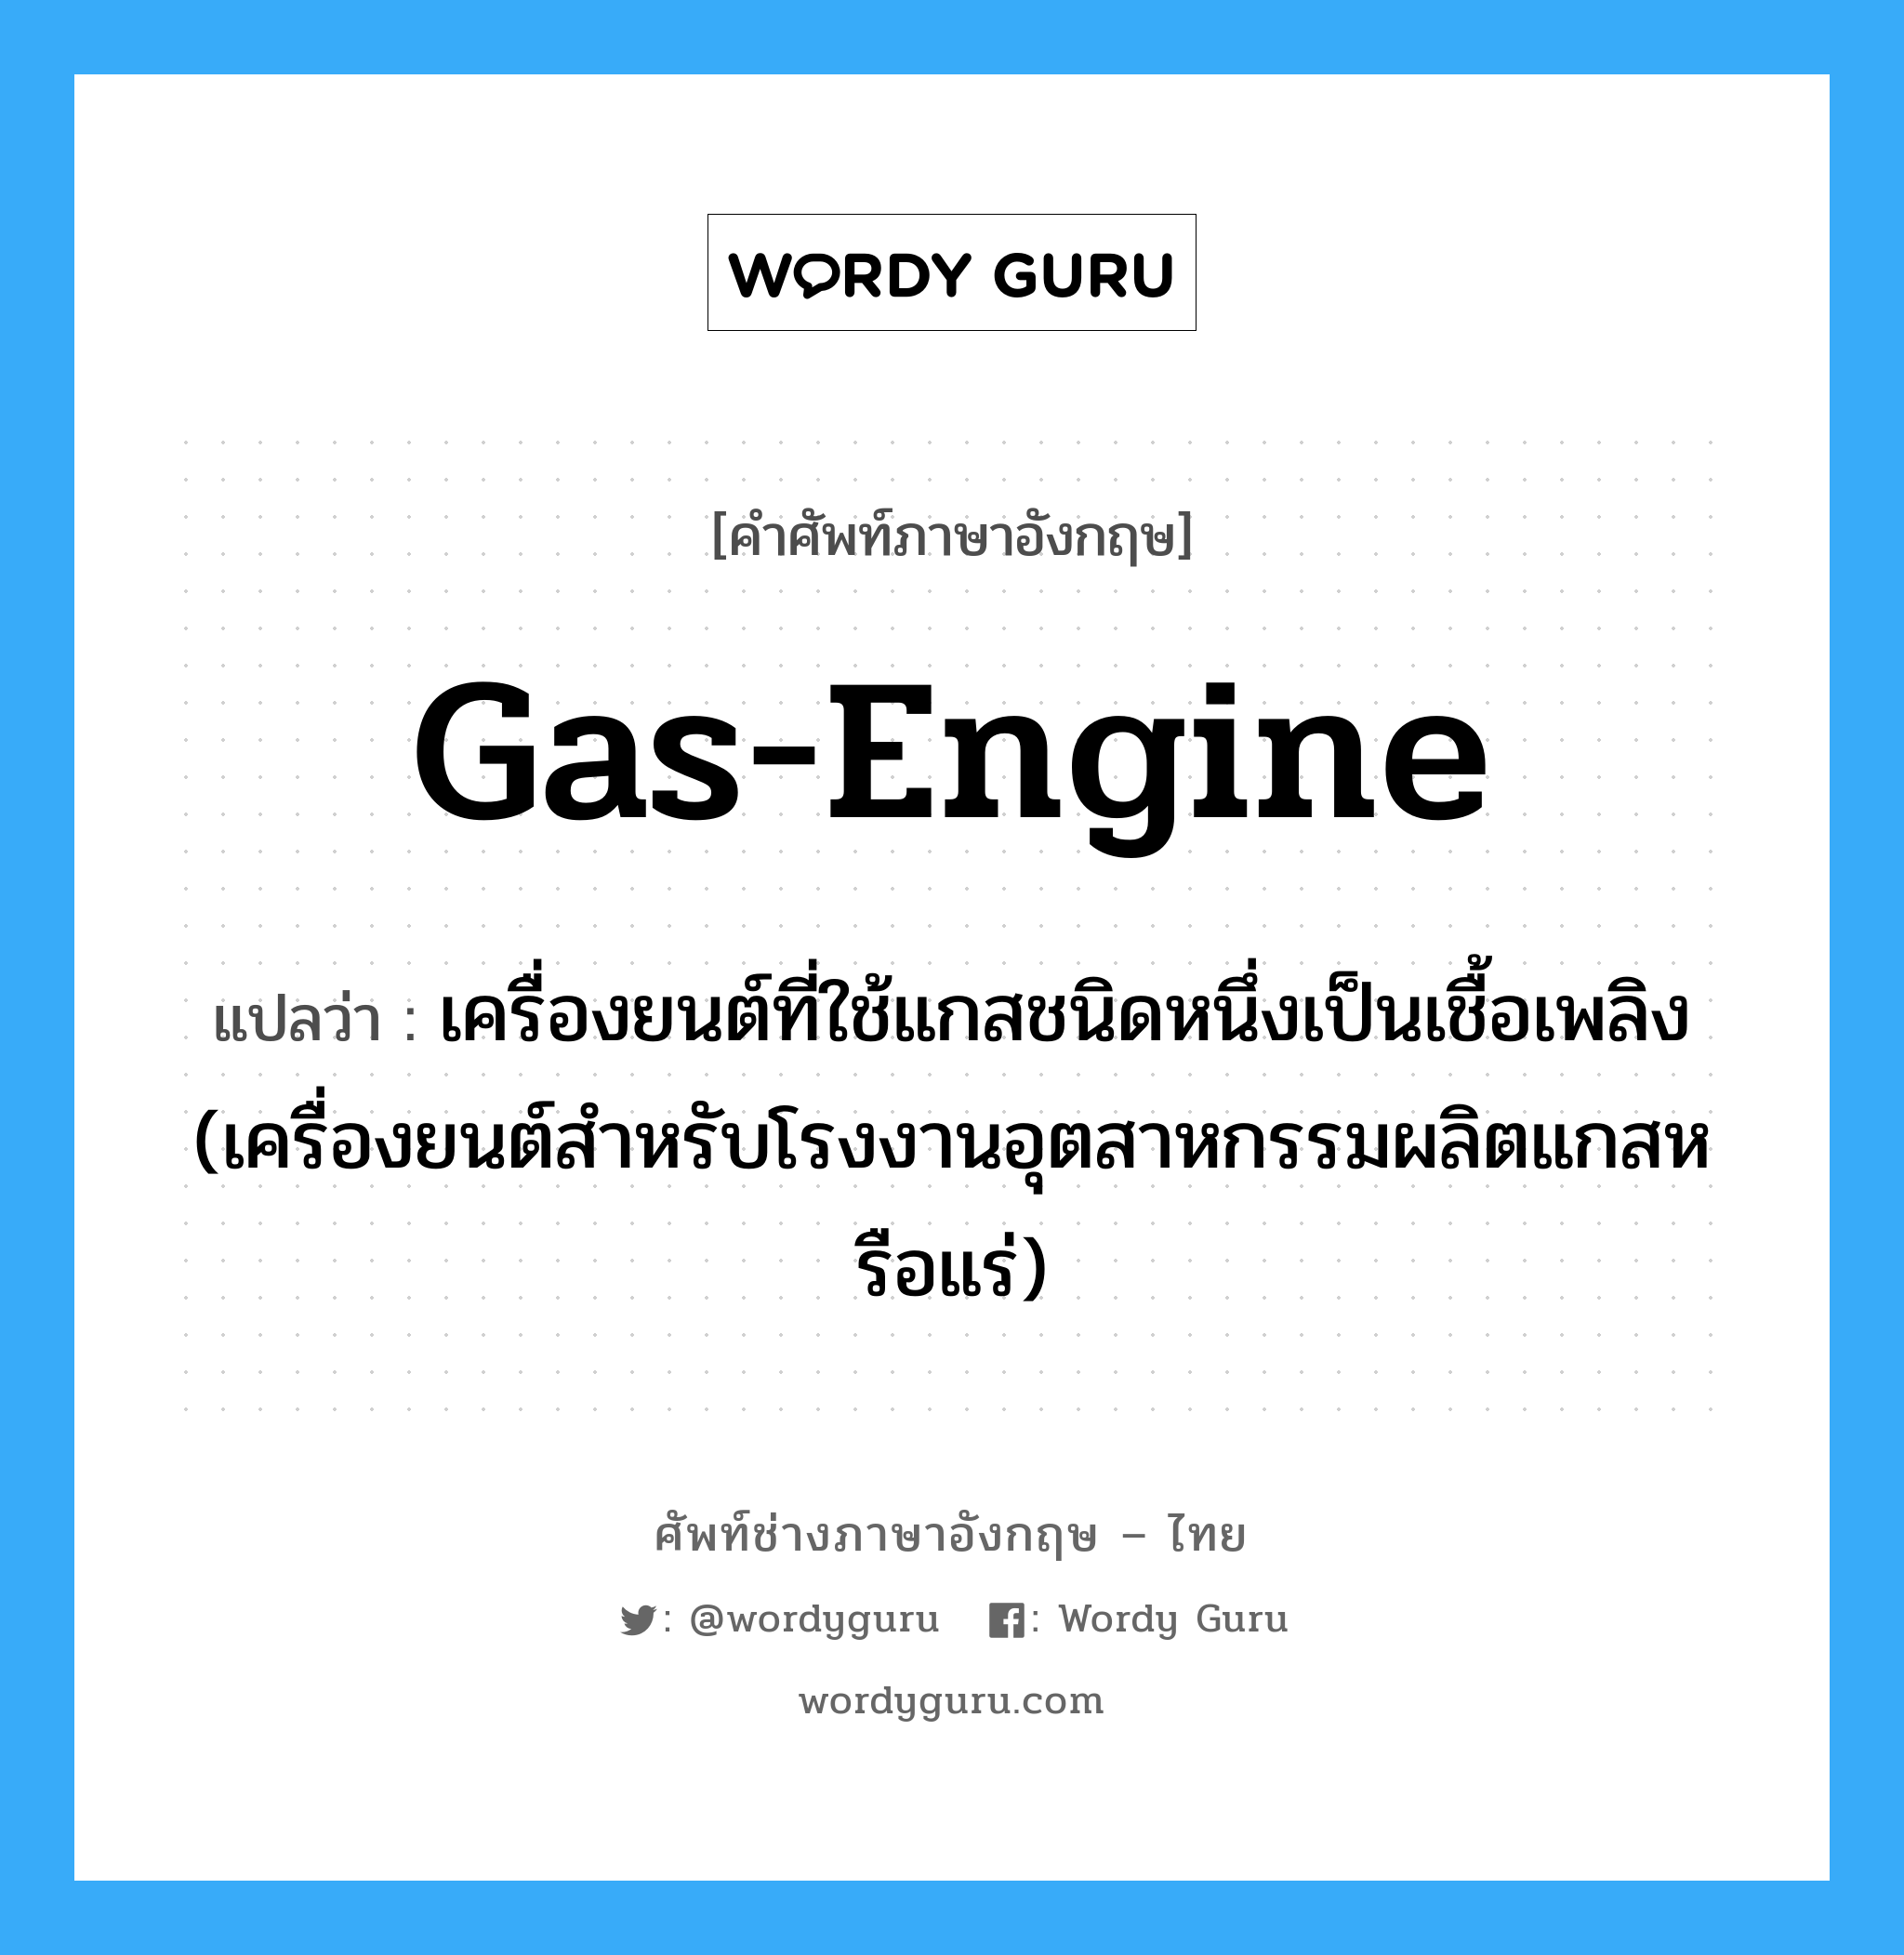 gas-engine แปลว่า?, คำศัพท์ช่างภาษาอังกฤษ - ไทย gas-engine คำศัพท์ภาษาอังกฤษ gas-engine แปลว่า เครื่องยนต์ที่ใช้แกสชนิดหนึ่งเป็นเชื้อเพลิง (เครื่องยนต์สำหรับโรงงานอุตสาหกรรมผลิตแกสหรือแร่)